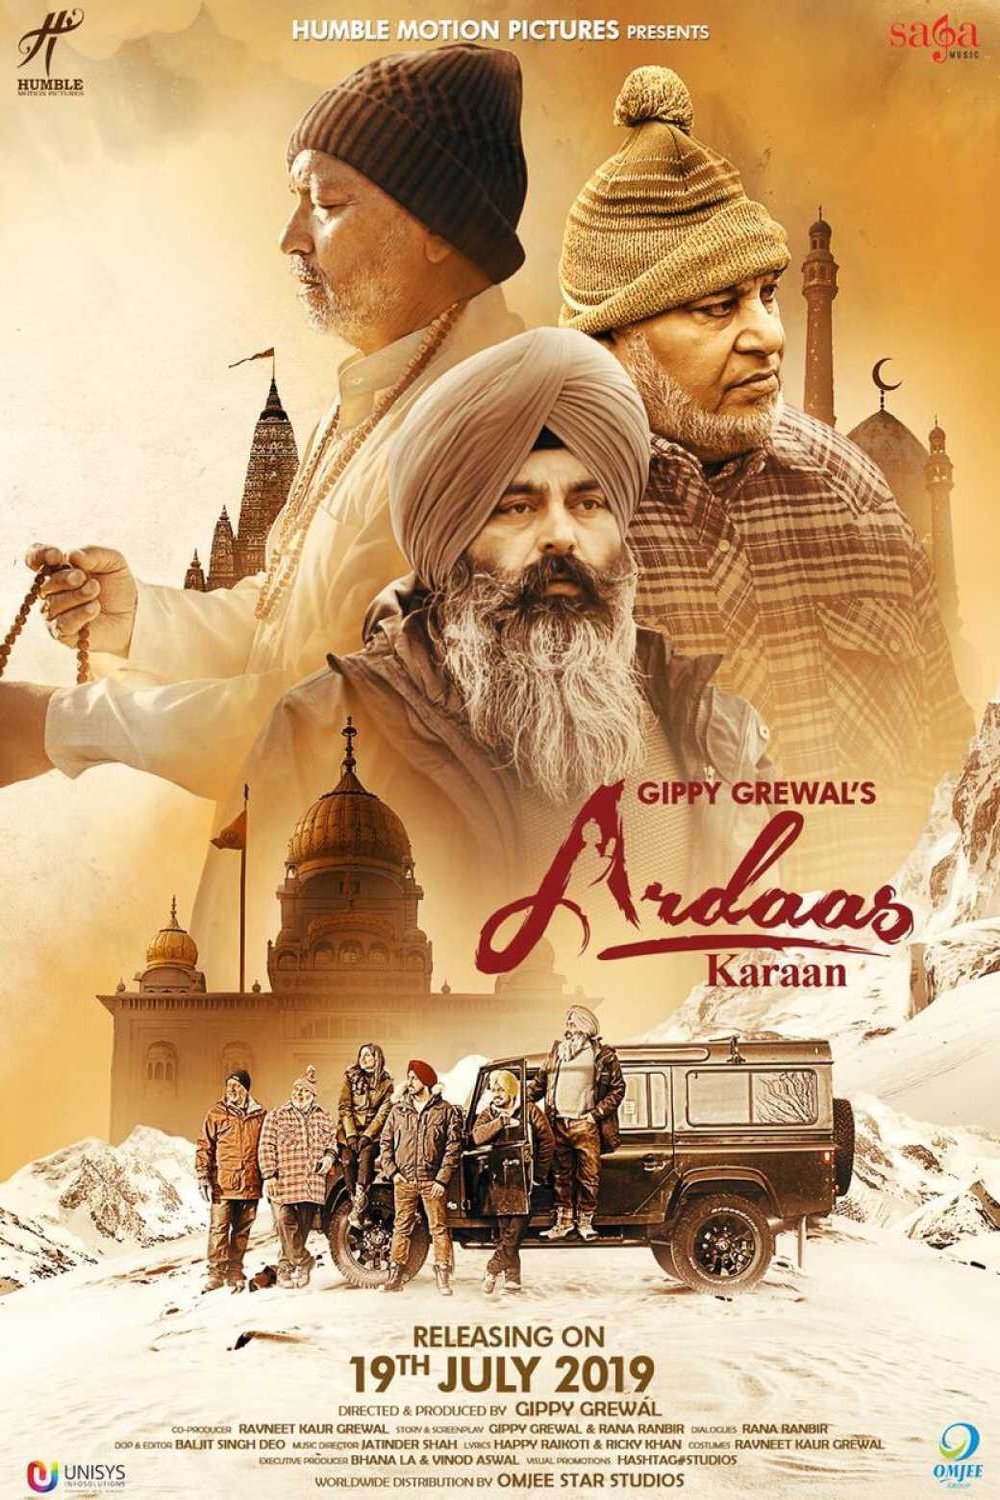 Punjabi poster of the movie Ardaas Karaan